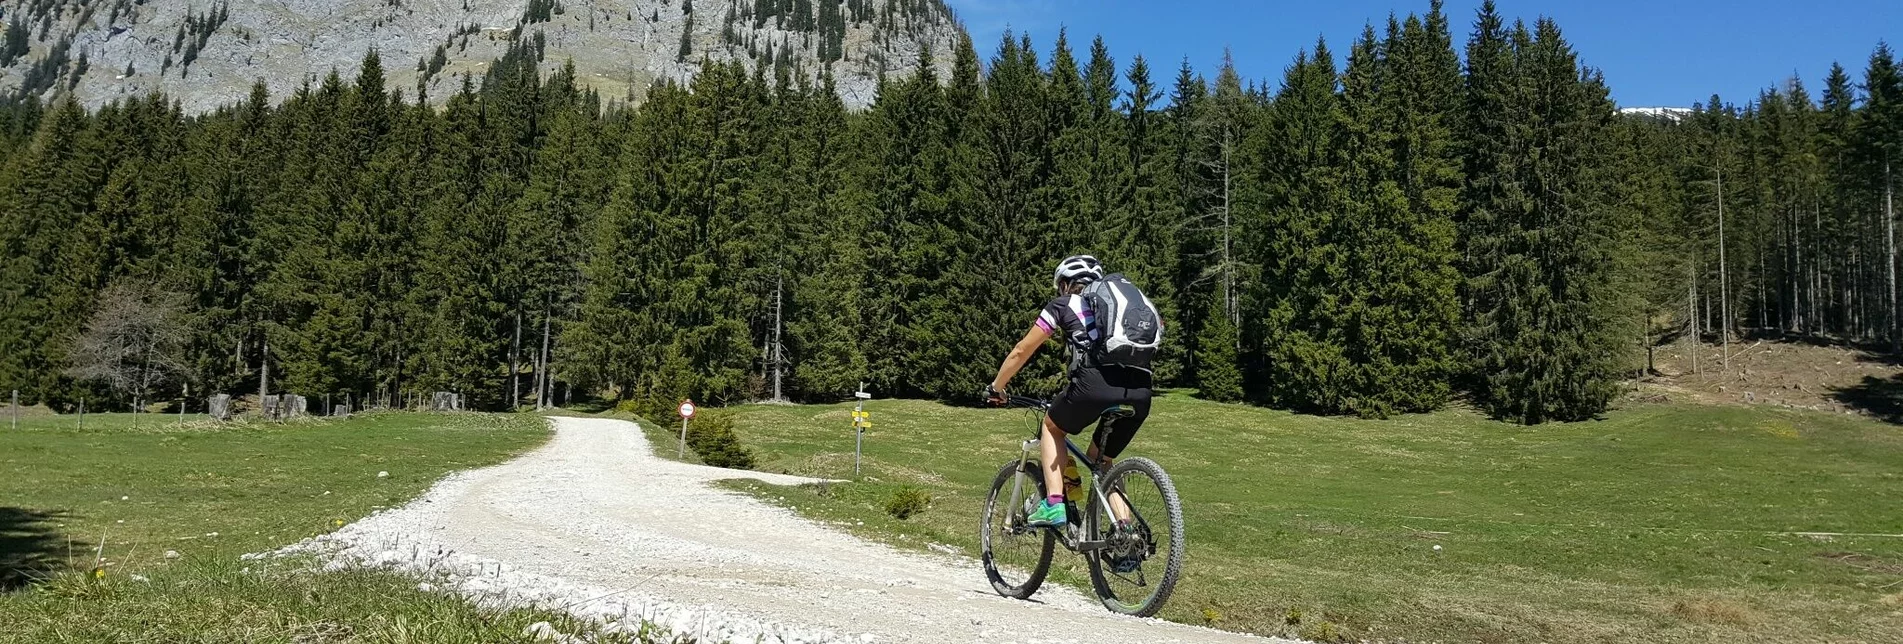 Mountainbike Schönmoos Runde - Sperre aufgrund einer Großhangbewegung - Touren-Impression #1 | © Erlebnisregion Schladming-Dachstein